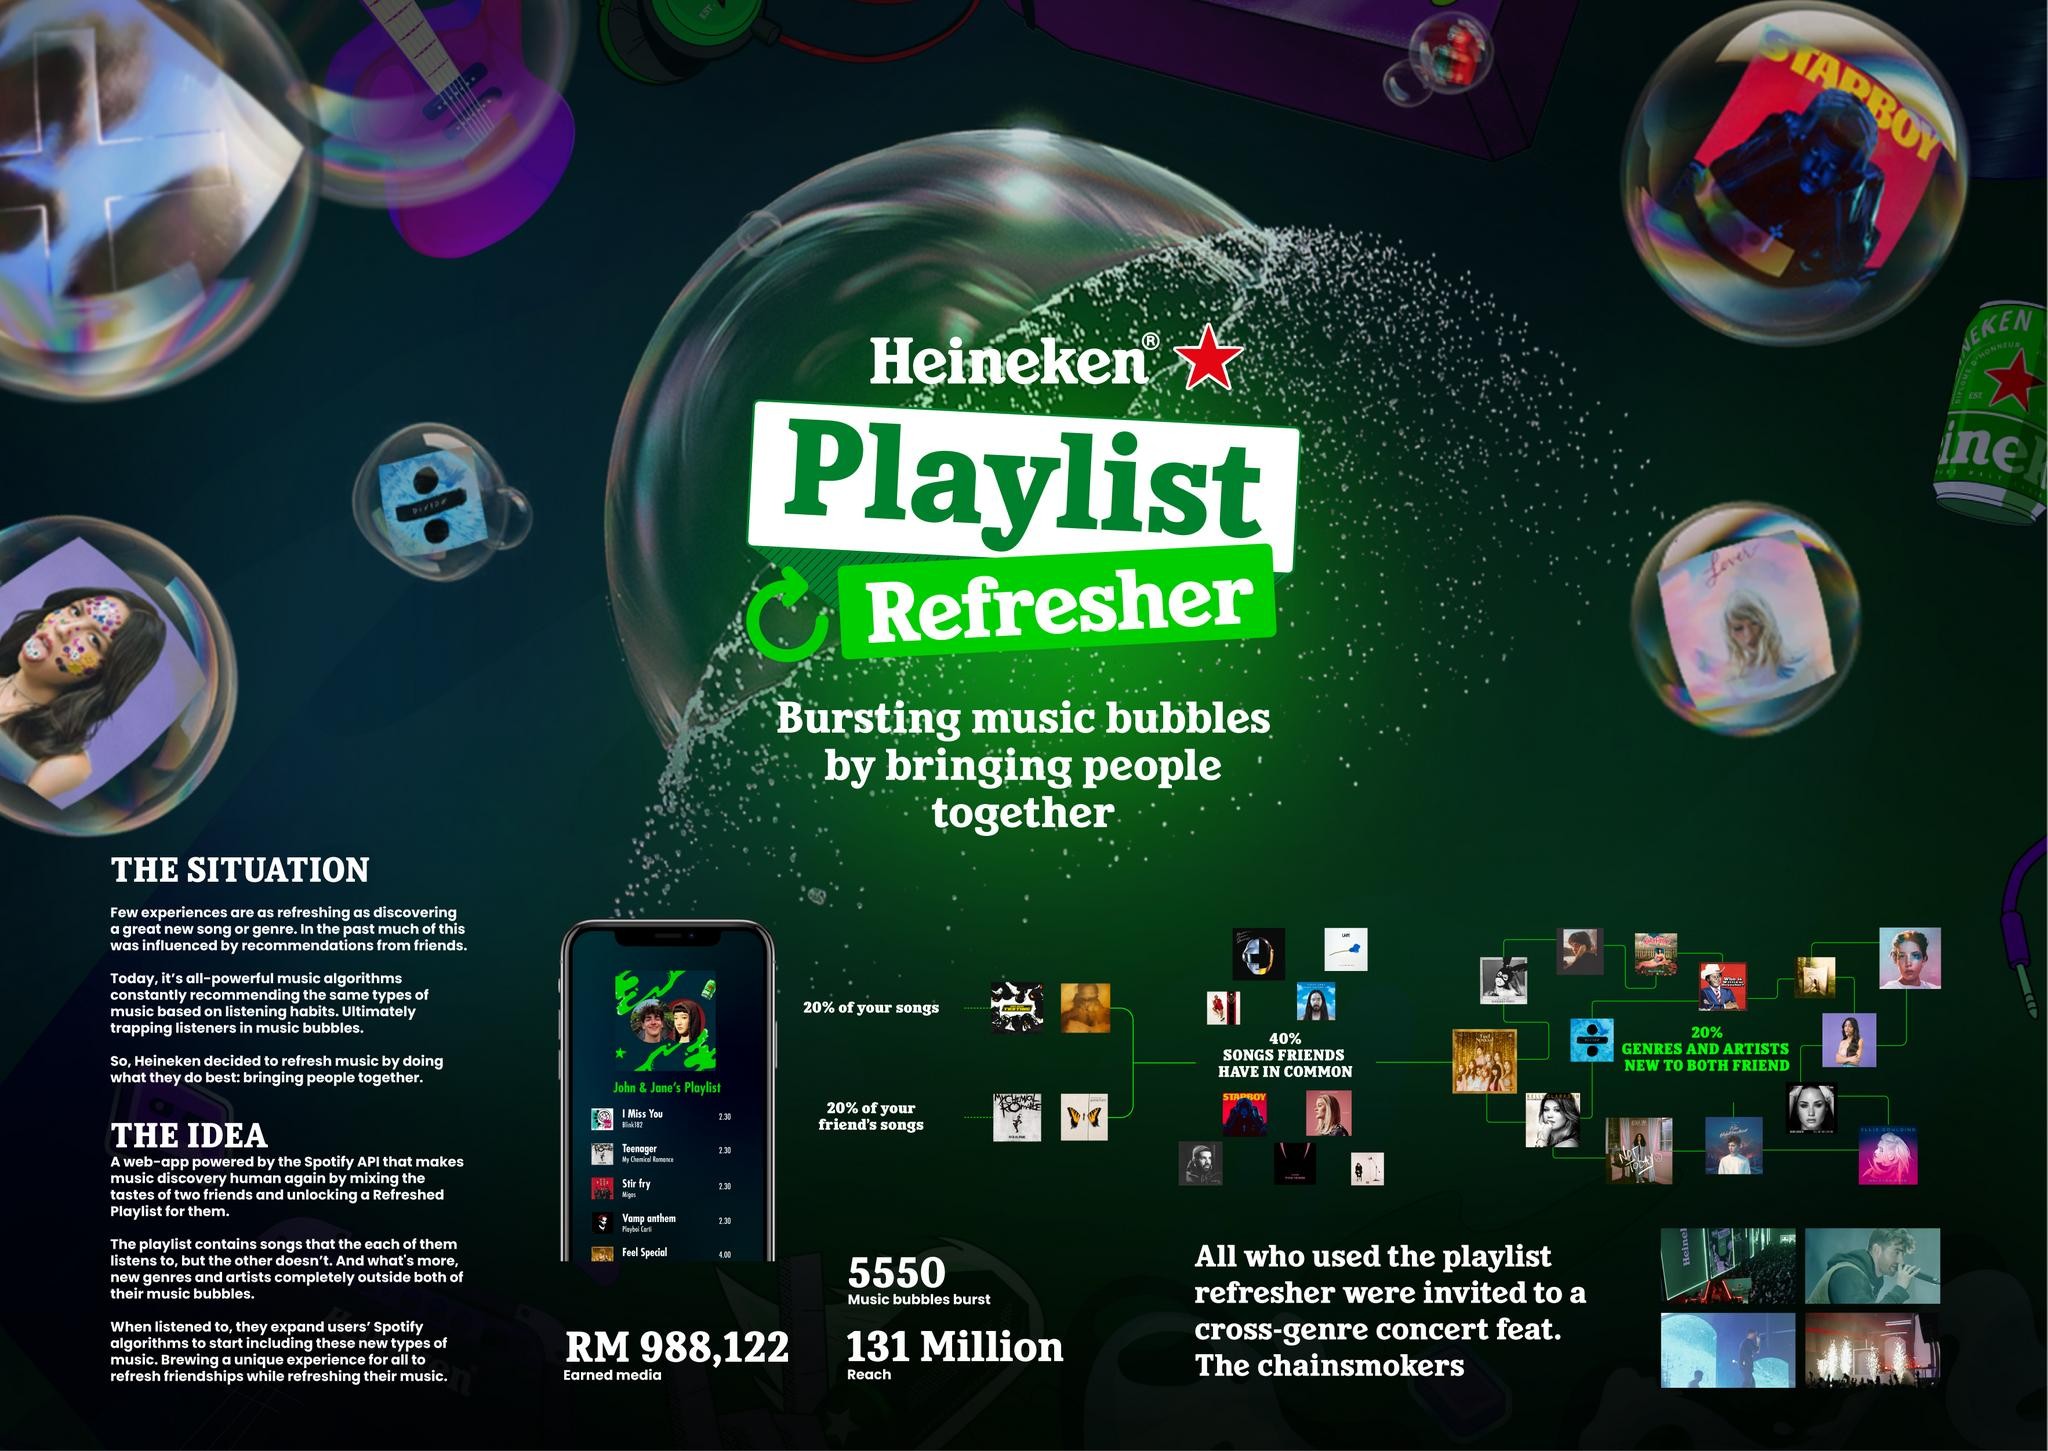 Heineken Playlist Refresher